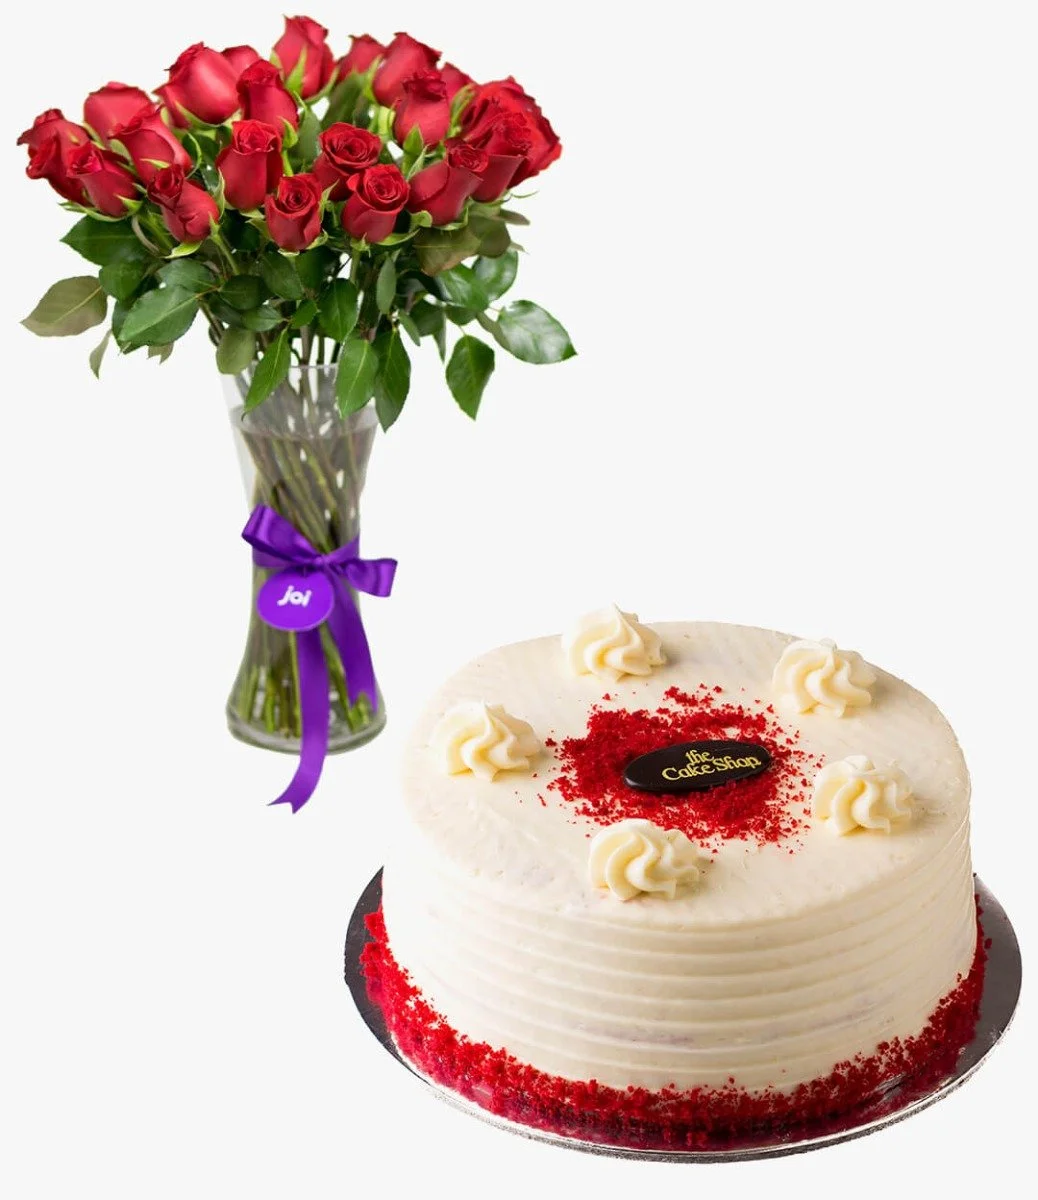 Red Velvet Cake & Flowers Gift Bundle